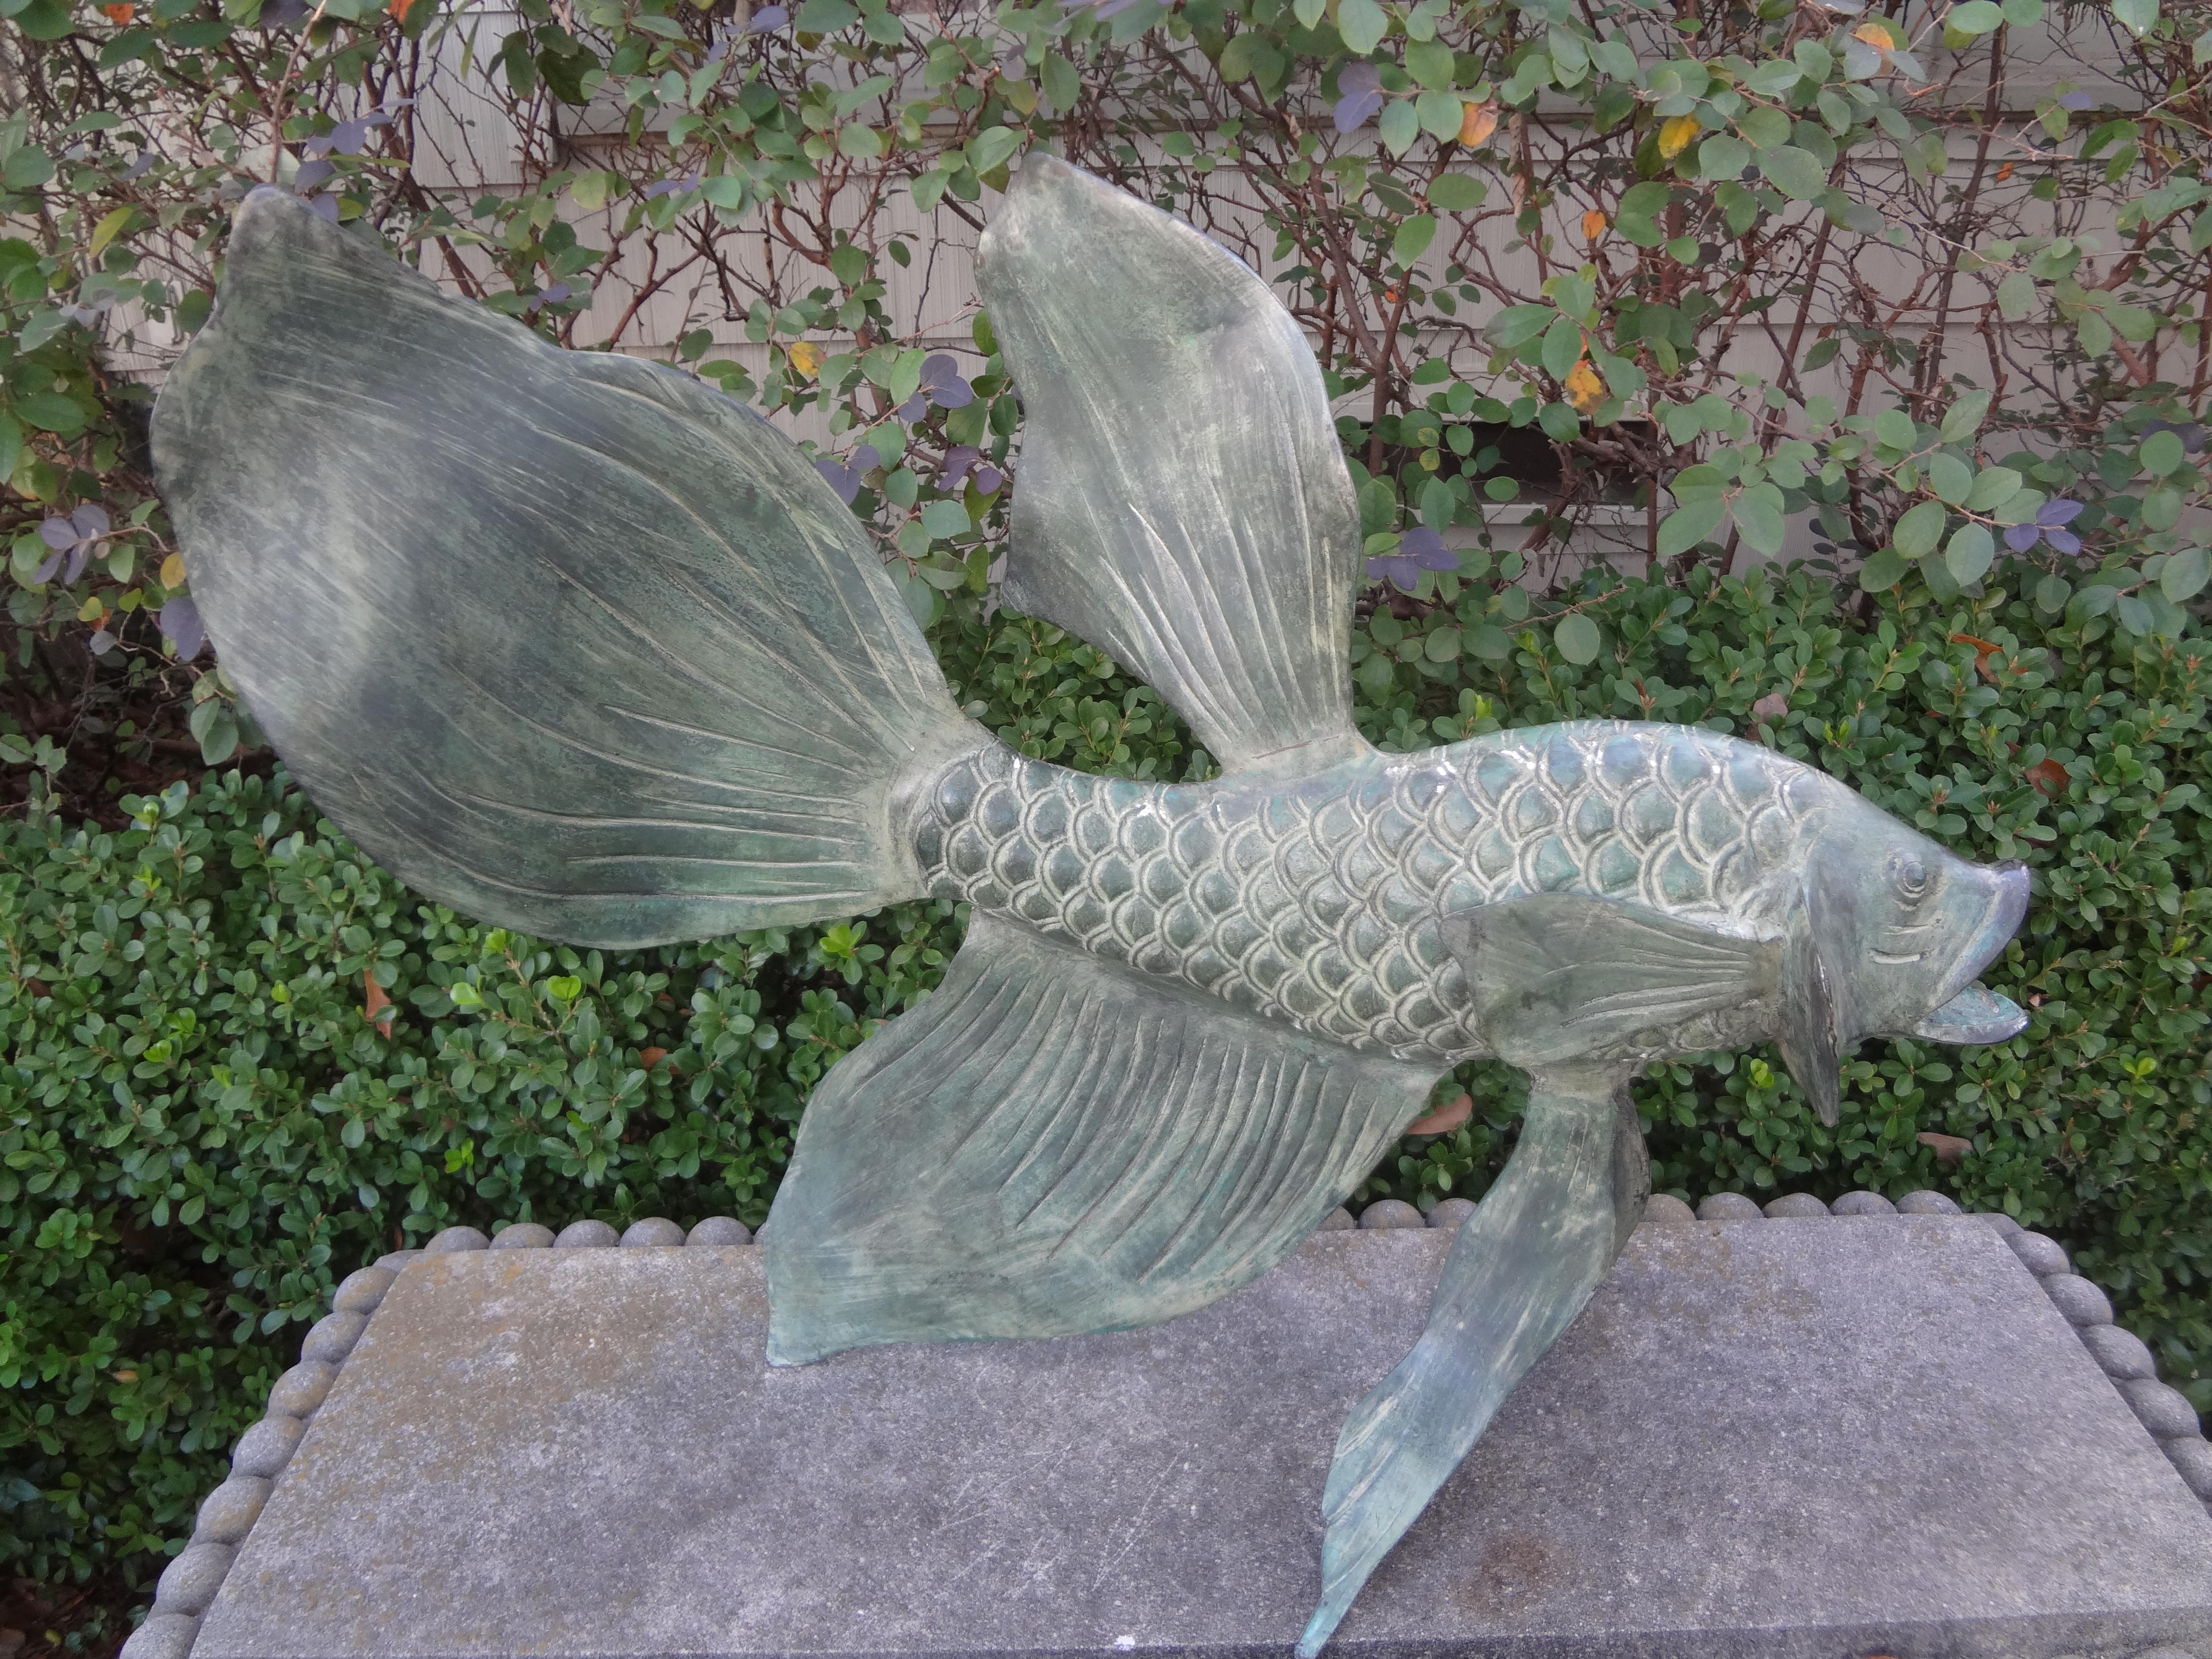 Japanische Koi-Fisch-Skulptur aus Bronze.
Diese gut ausgeführte japanische Bronze Koi oder Goldfisch Skulptur hat eine schöne patinierte Grünspan-Finish und wird entweder drinnen oder draußen in einem Garten Einstellung großartig aussehen.
Wir